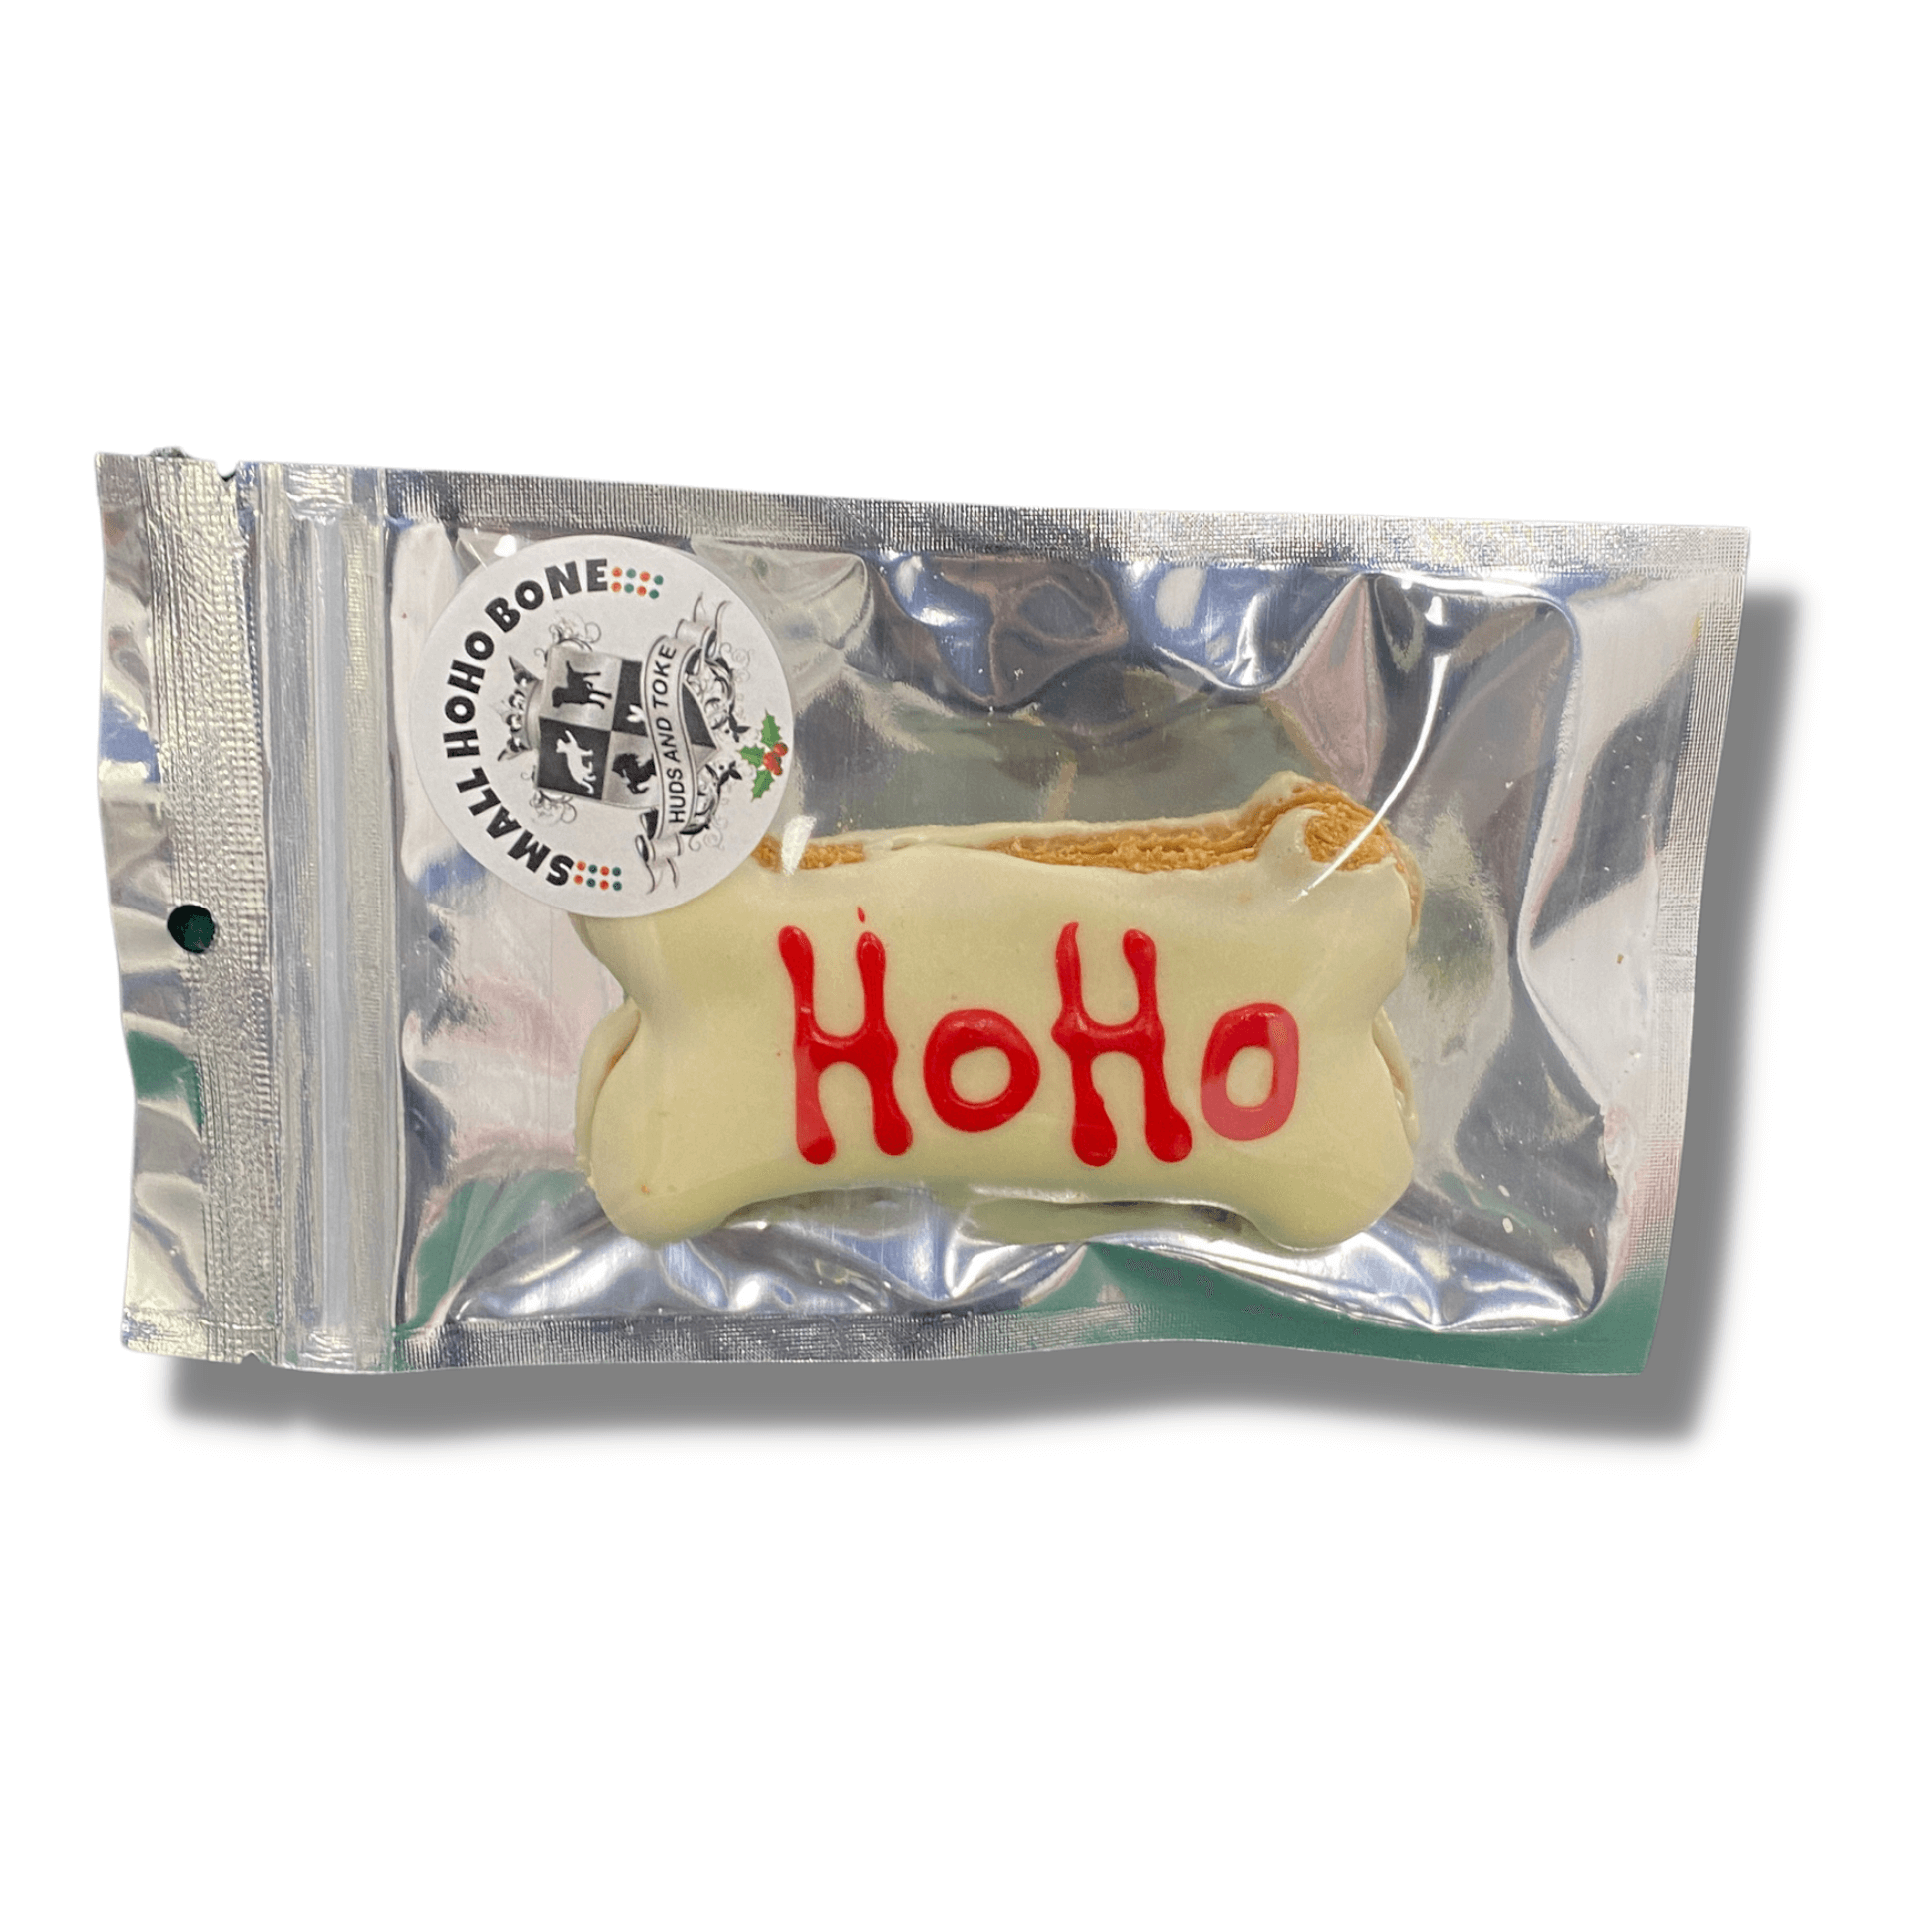 Christmas themed "HOHO" dog bone treat cookie